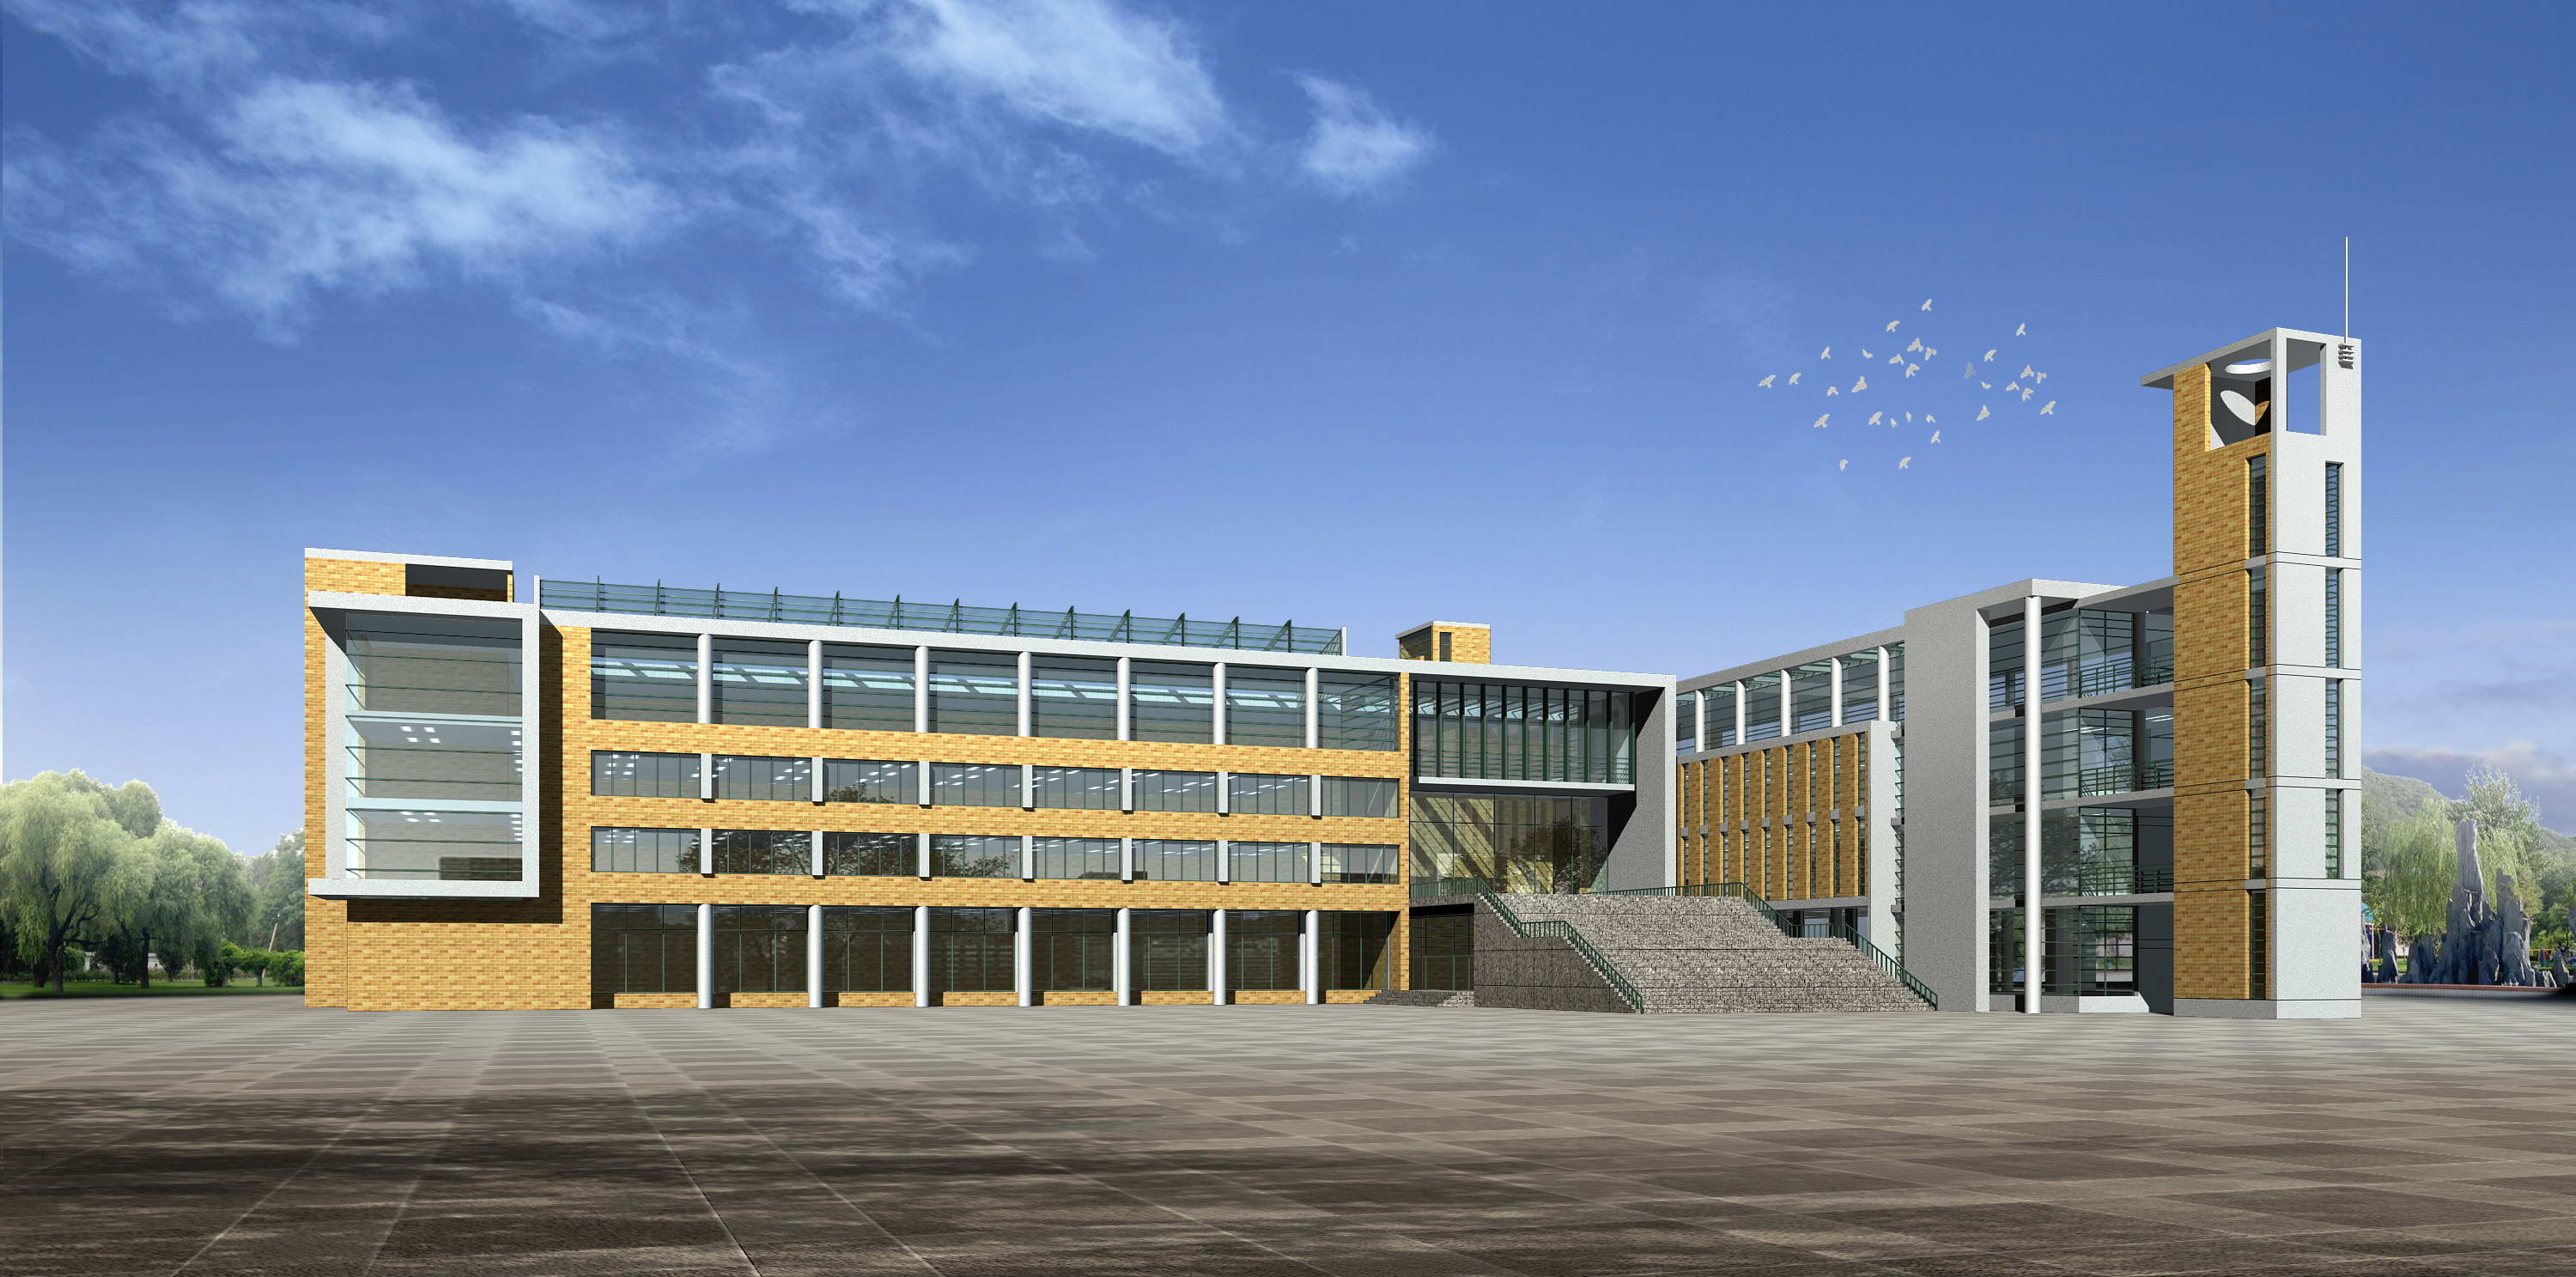 西安航天城第一中学-西安建筑科技大学建筑设计研究院-教育建筑案例-筑龙建筑设计论坛